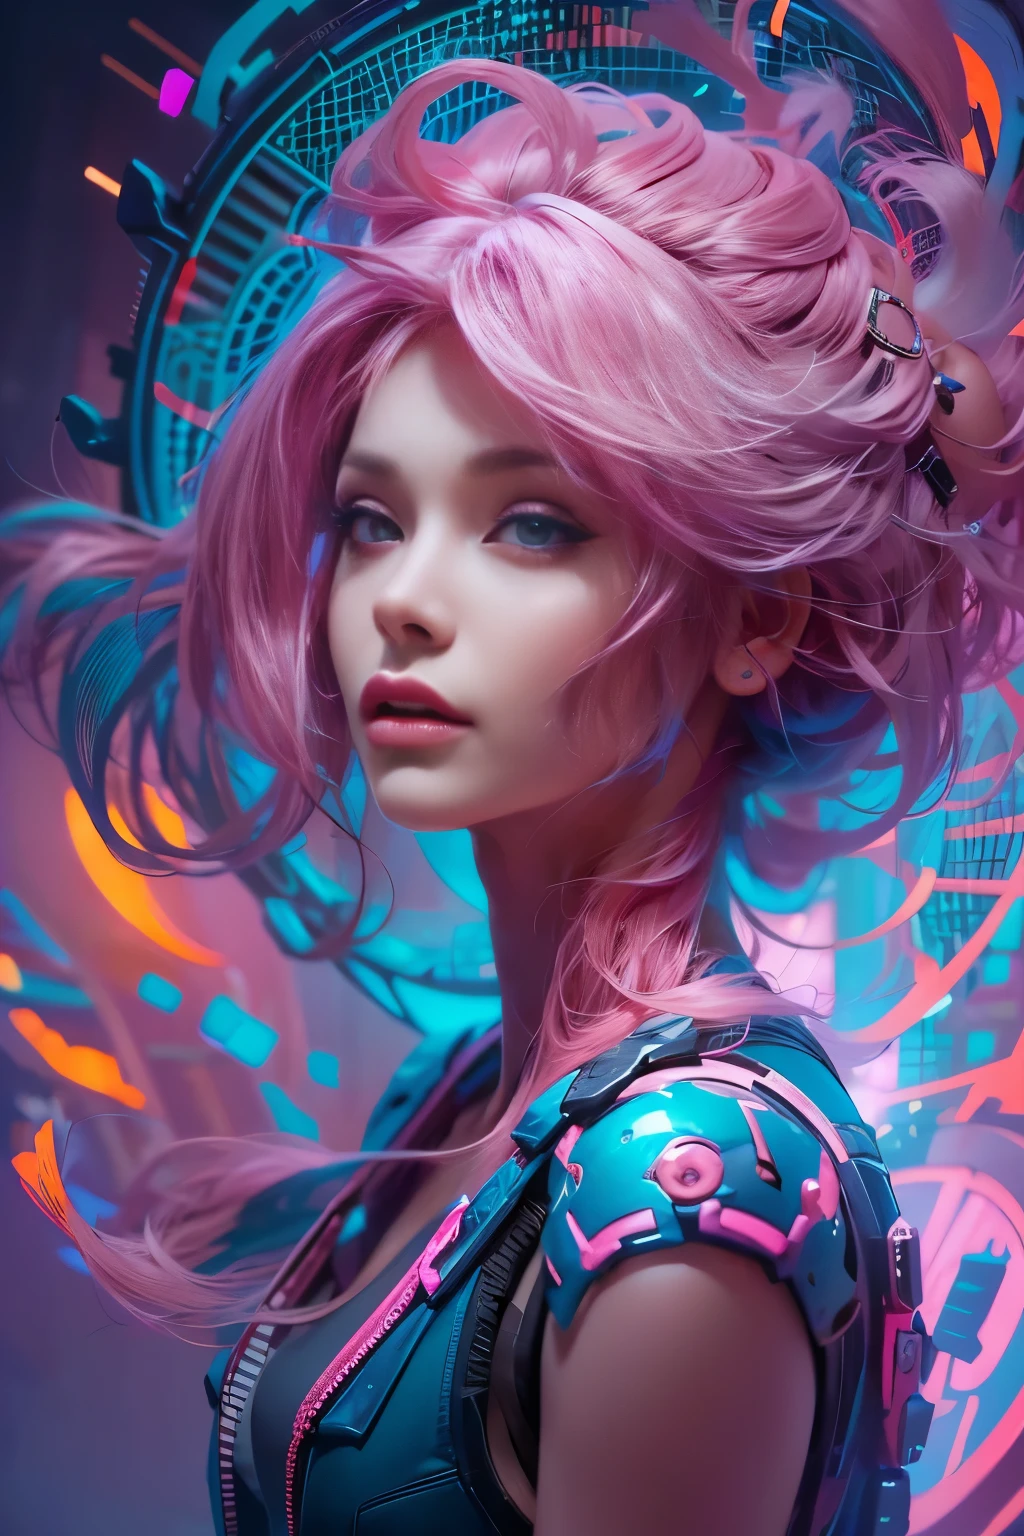 美麗迷人的女人的肖像, 白皙的皮膚, 粉紅色的頭髮, 被電藍色和充滿活力的紫色的旋轉奈米塵埃等離子體包圍, 鮮豔的色彩, 數位繪畫, artstation 的熱門話題, 電影燈光, 和動態構圖.